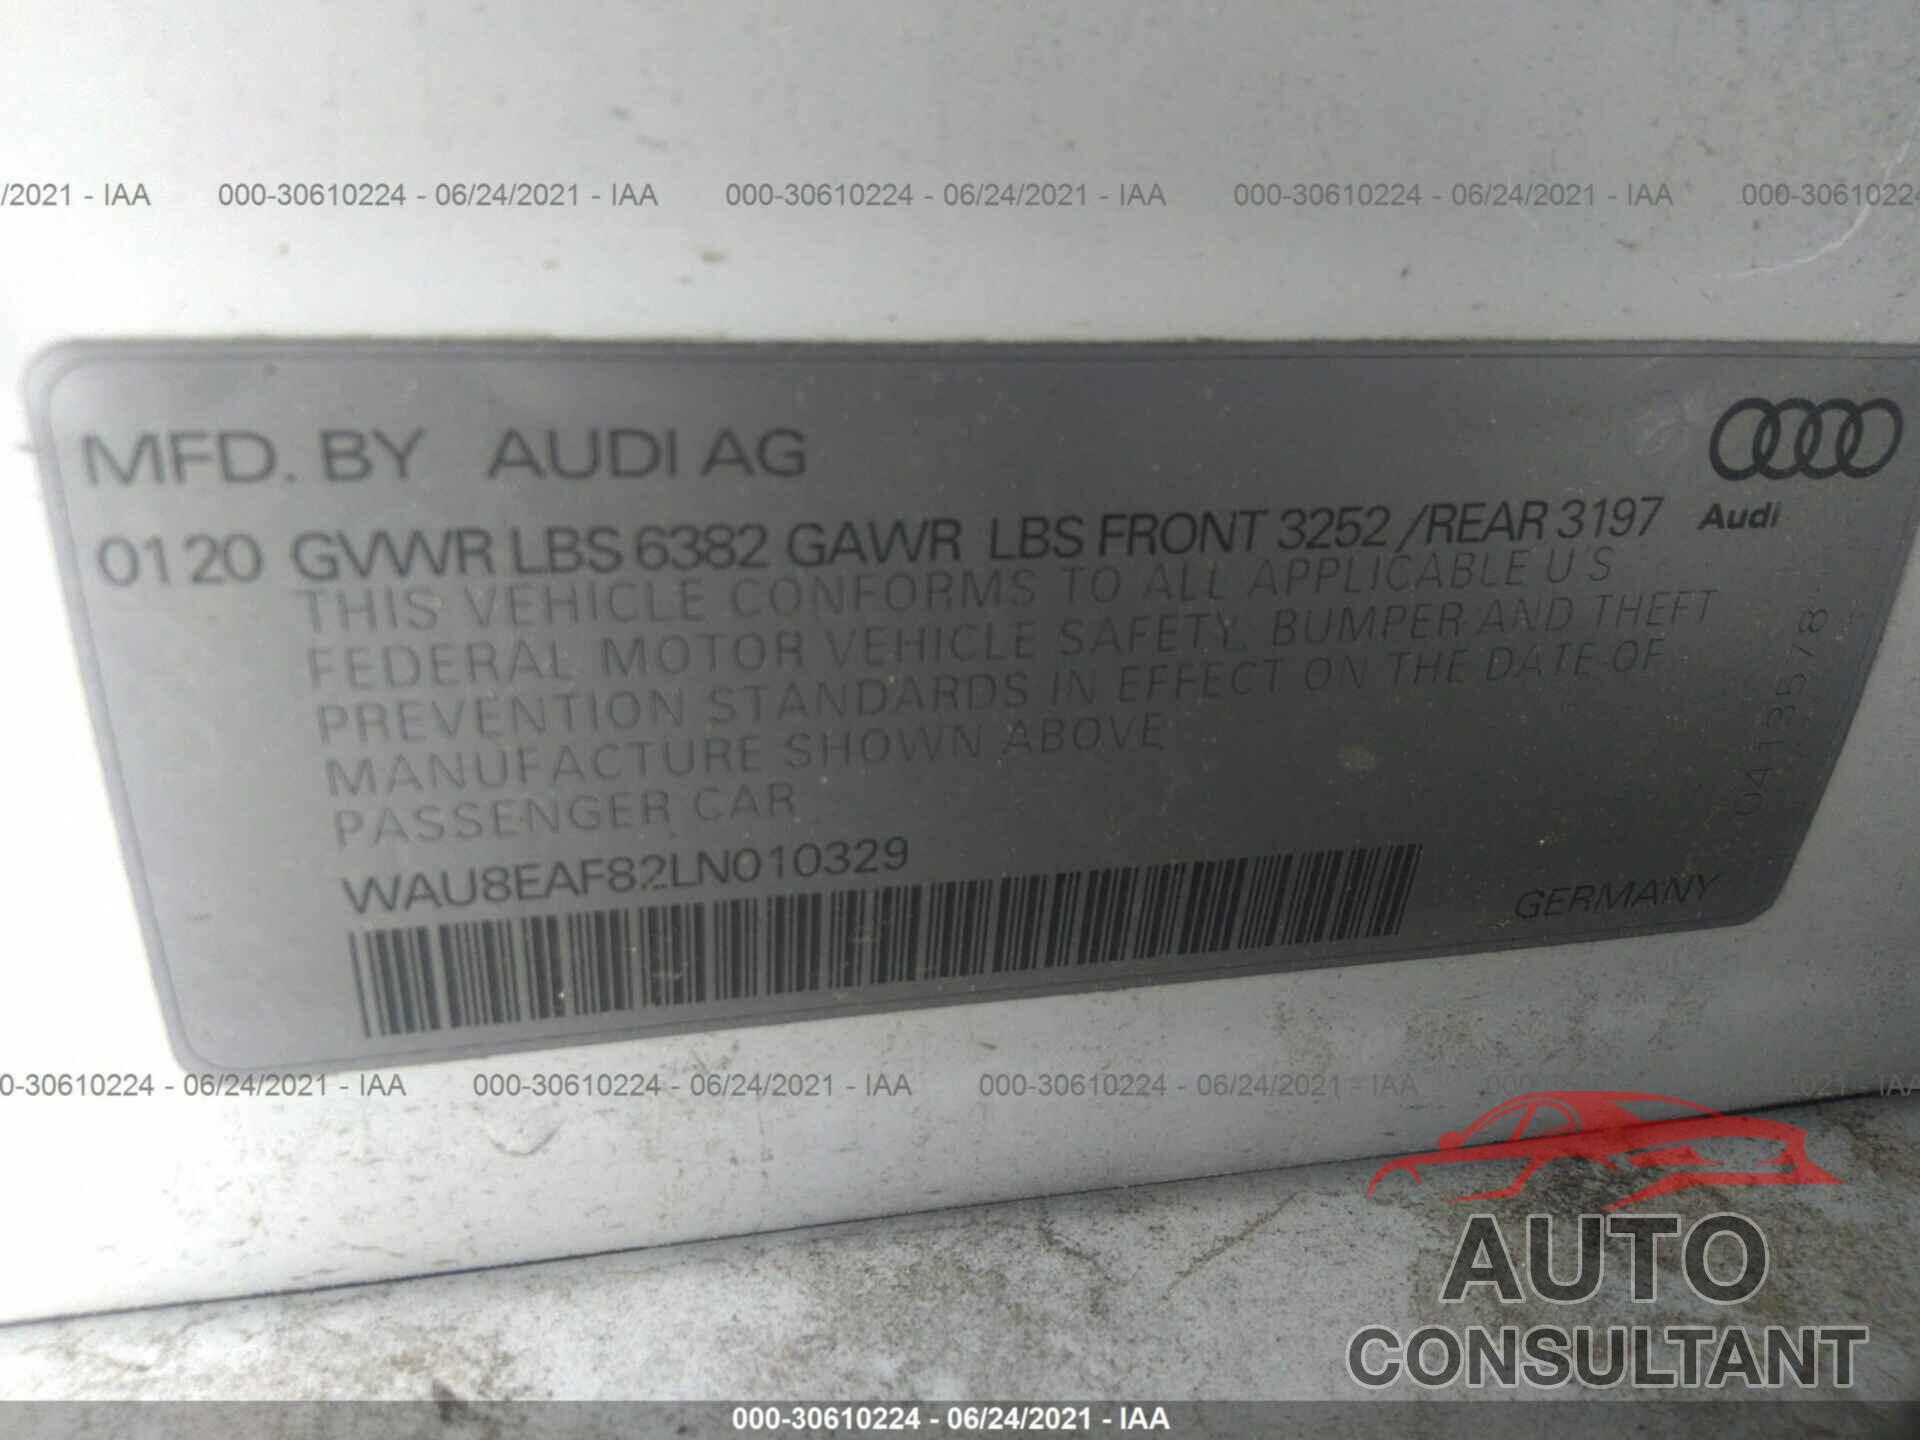 AUDI A8 L 2020 - WAU8EAF82LN010329